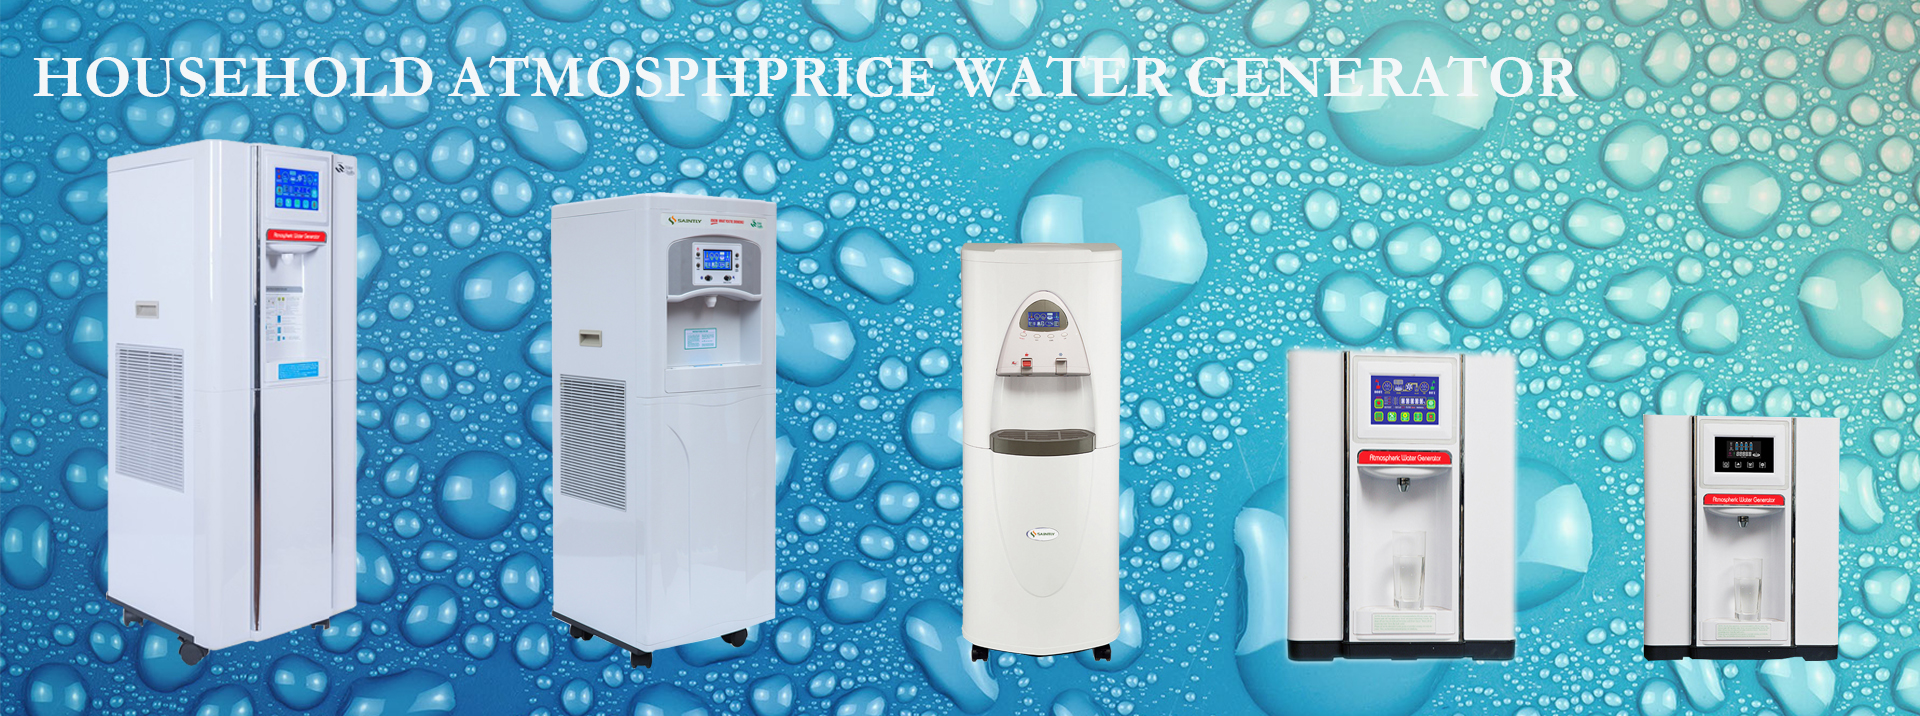 Atmospheric water Generator, air water dispenser, air water generator